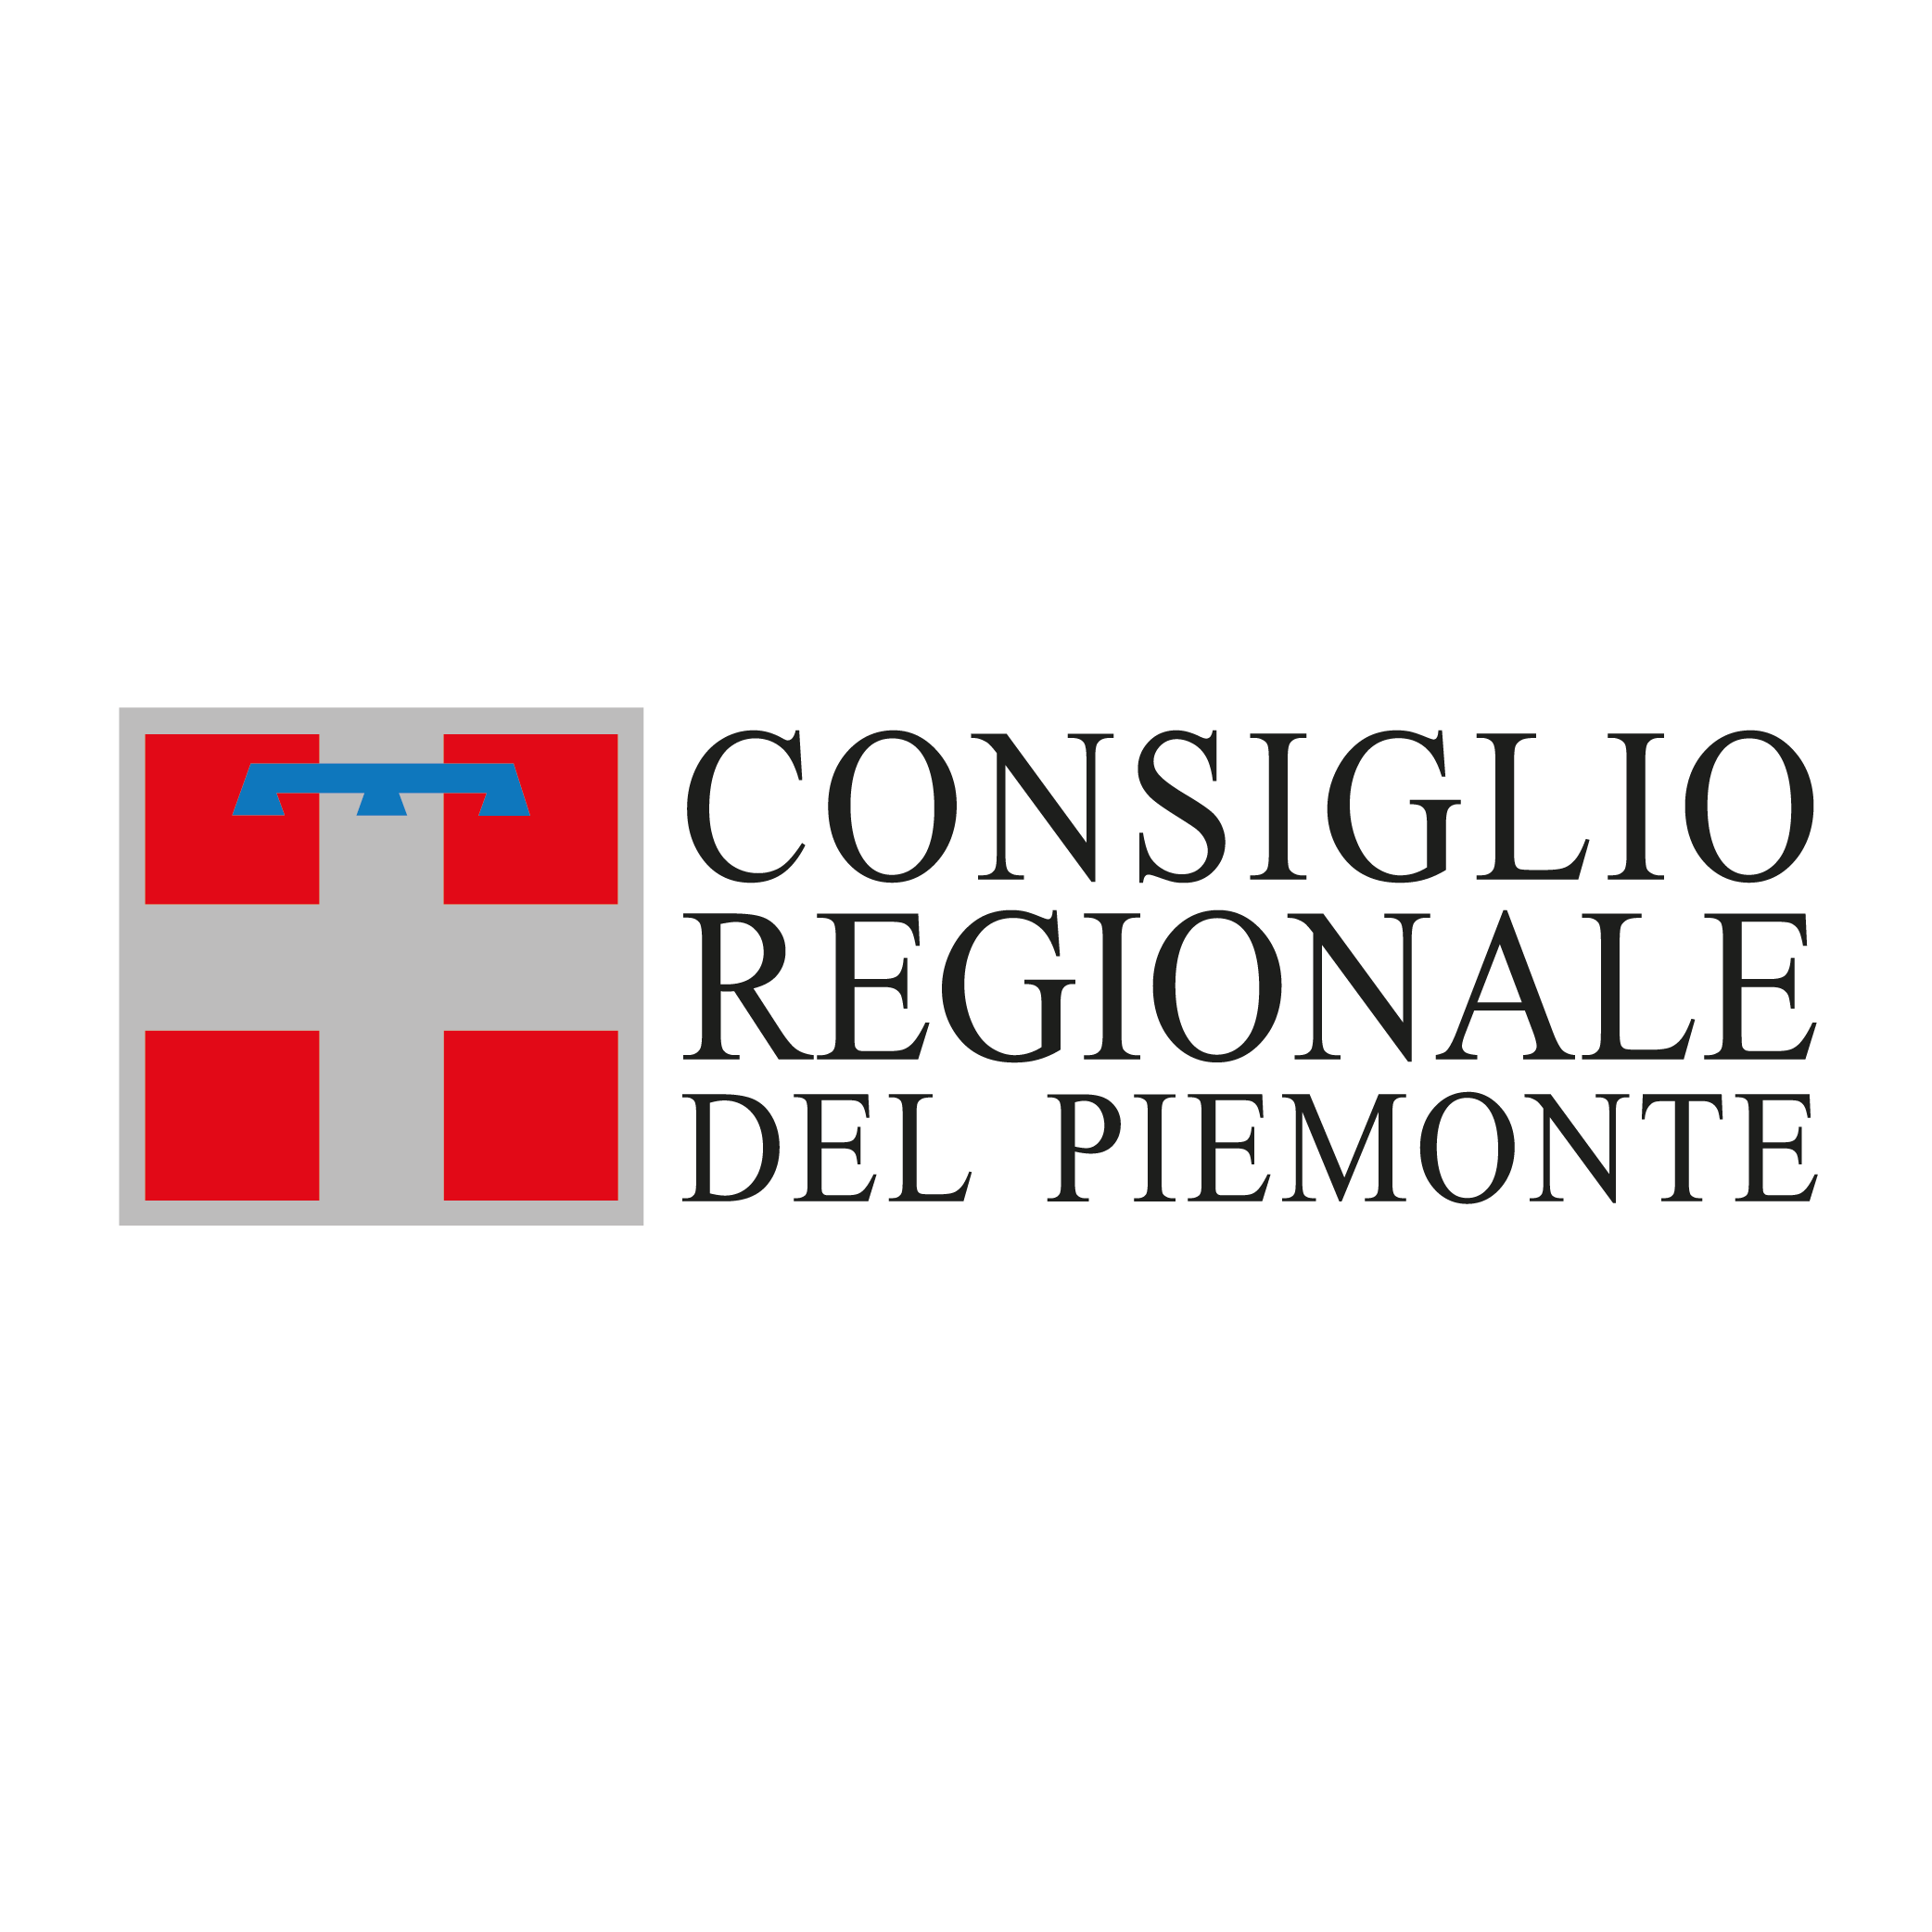 Il Consiglio regionale del Piemonte è stato nostro cliente per la gestione social.